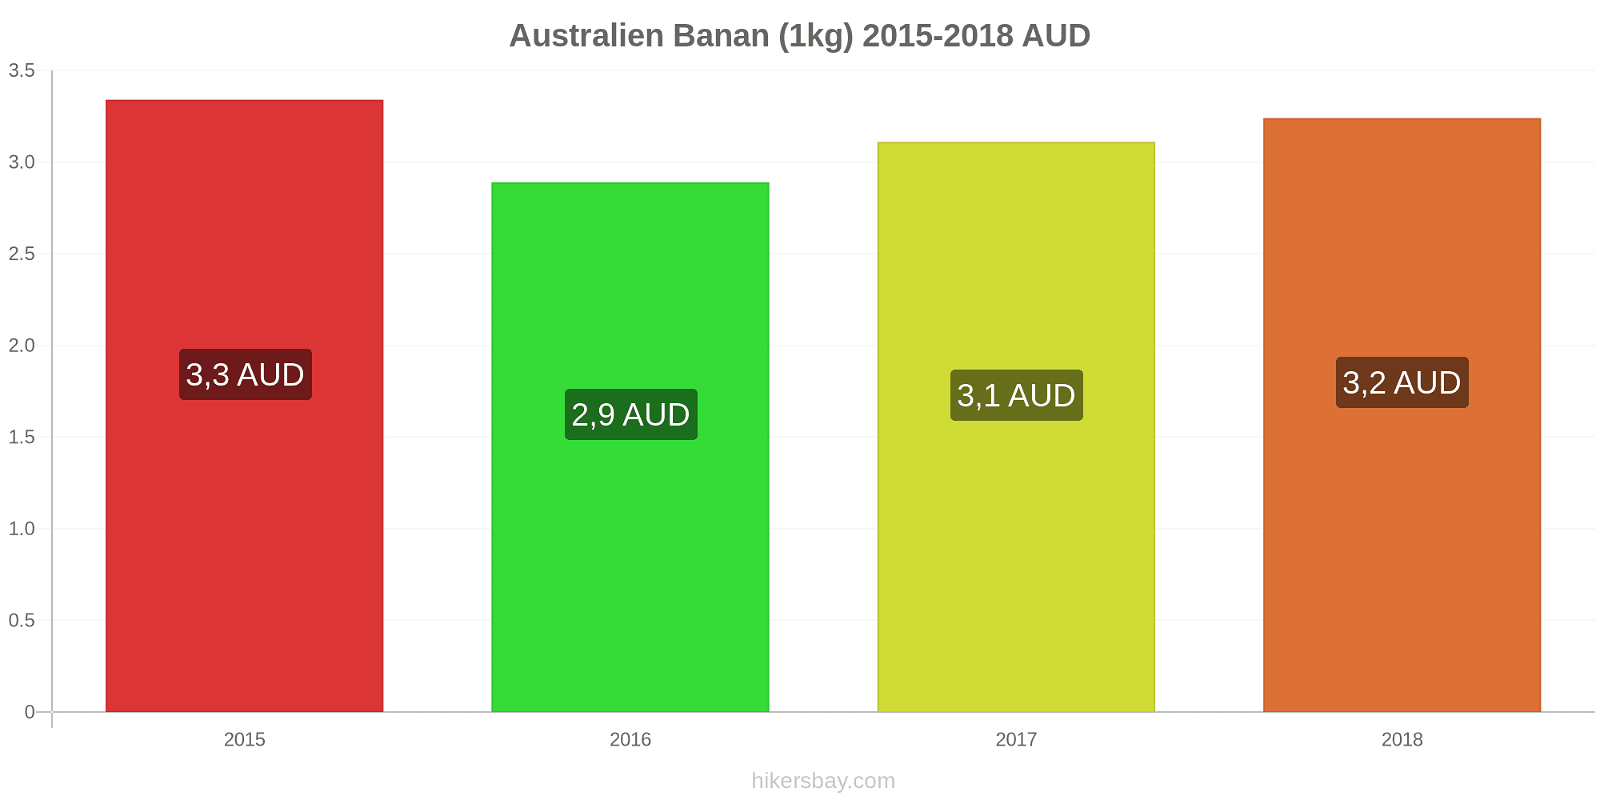 Australien prisändringar Bananer (1kg) hikersbay.com